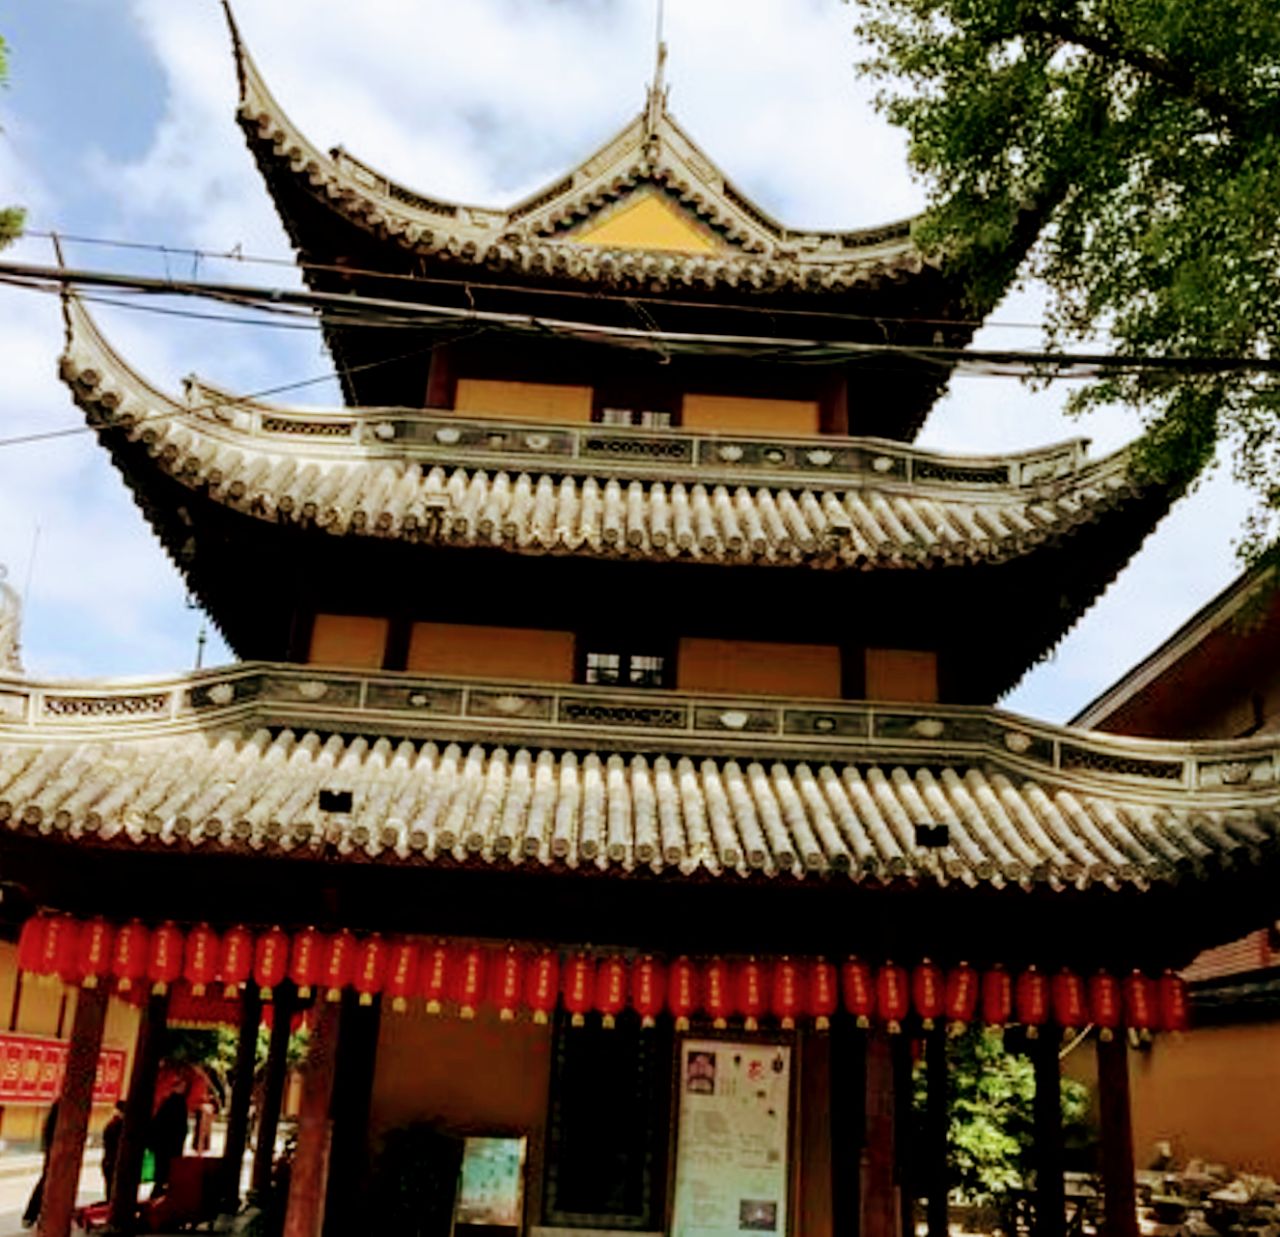 【携程攻略】上海龙华寺景点,龙华寺在上海地区已有1700多年历史的一座历史最久、规模最大的古刹：…